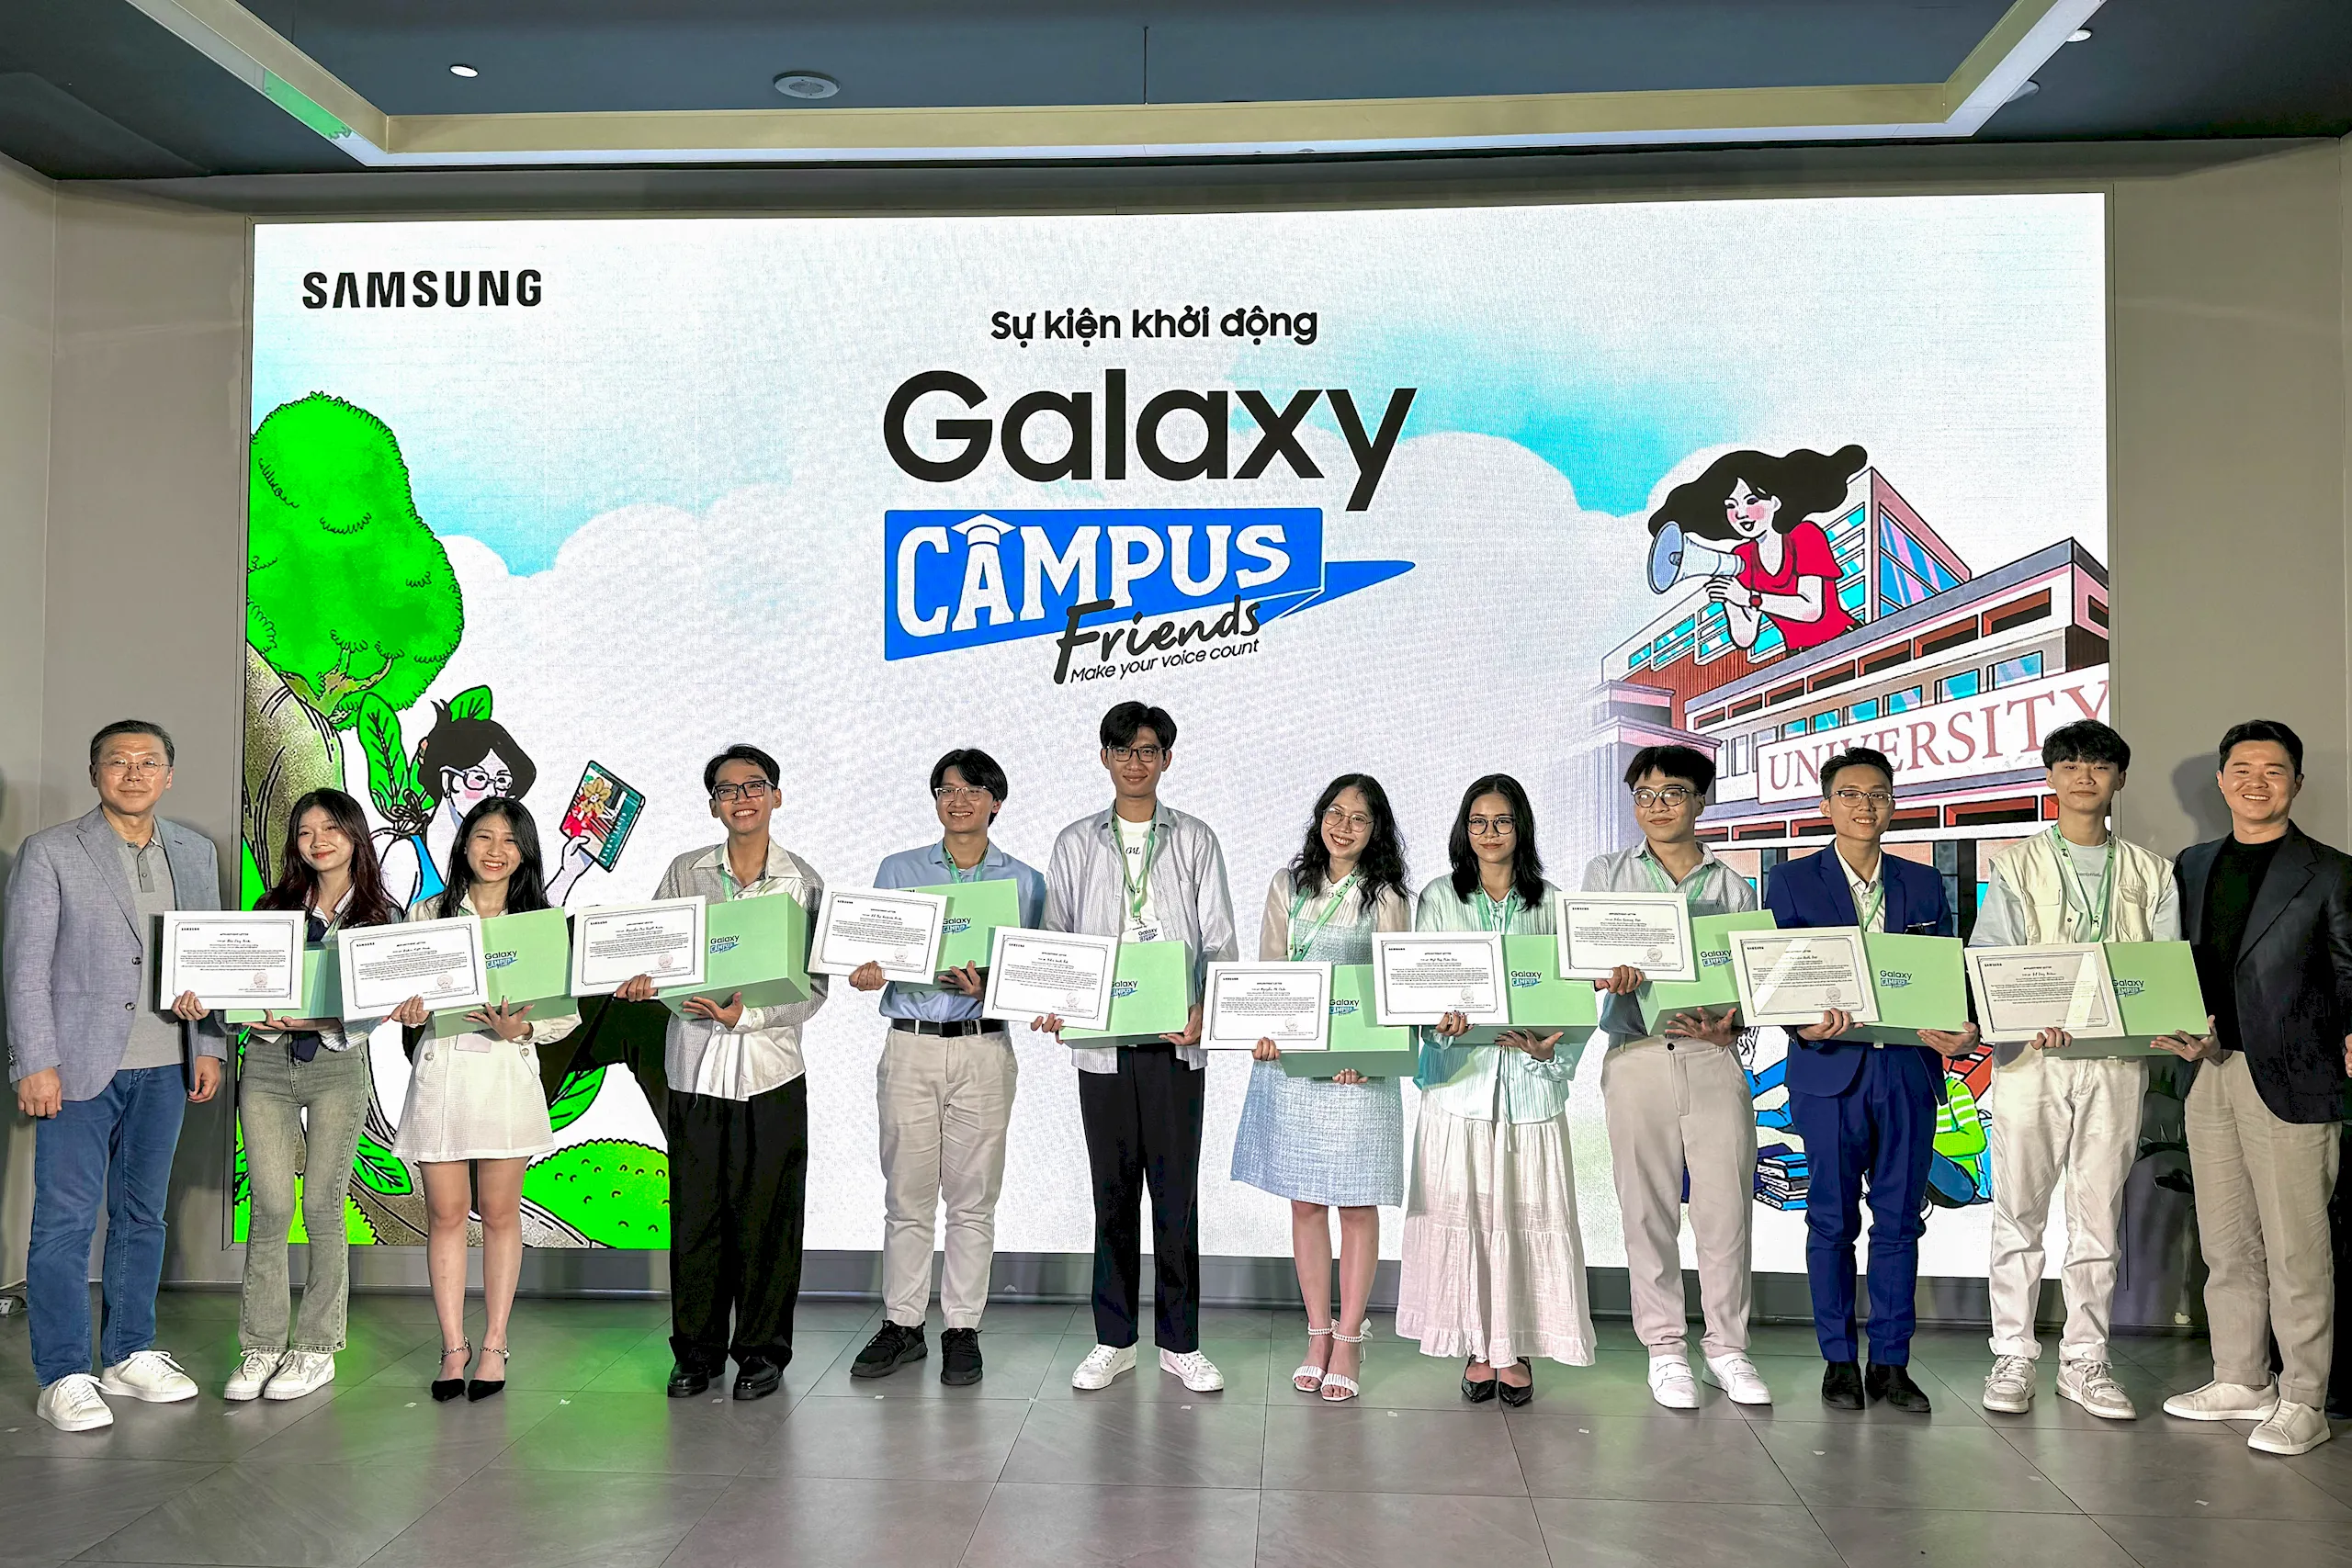 Samsung chính thức công bố 50 bạn sinh viên tài năng nhất từ chương trình Galaxy Campus Friends